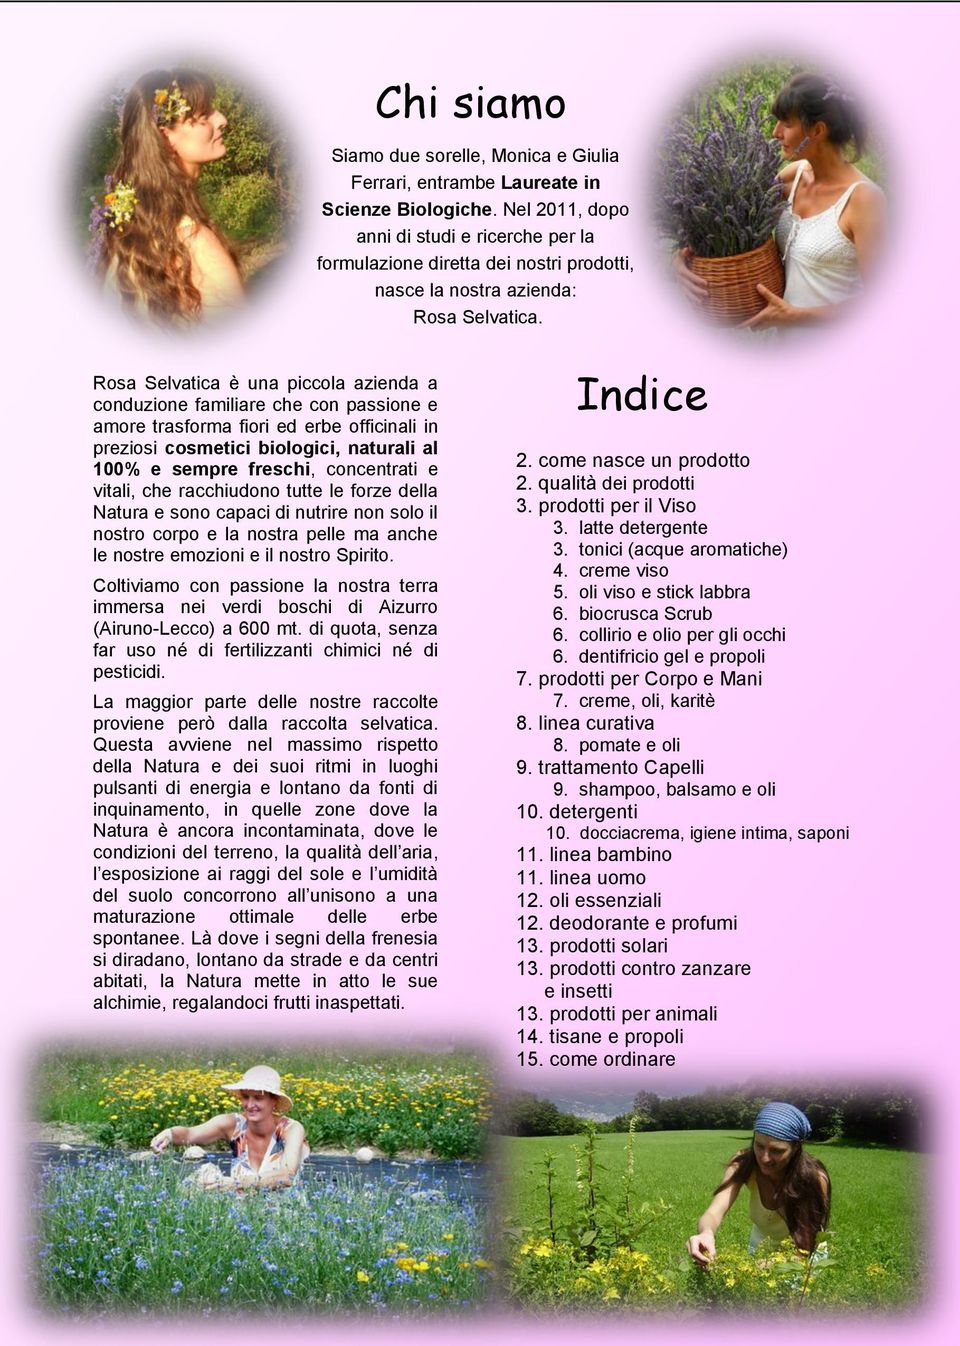 Rosa Selvatica è una piccola azienda a conduzione familiare che con passione e amore trasforma fiori ed erbe officinali in preziosi cosmetici biologici, naturali al 100% e sempre freschi, concentrati